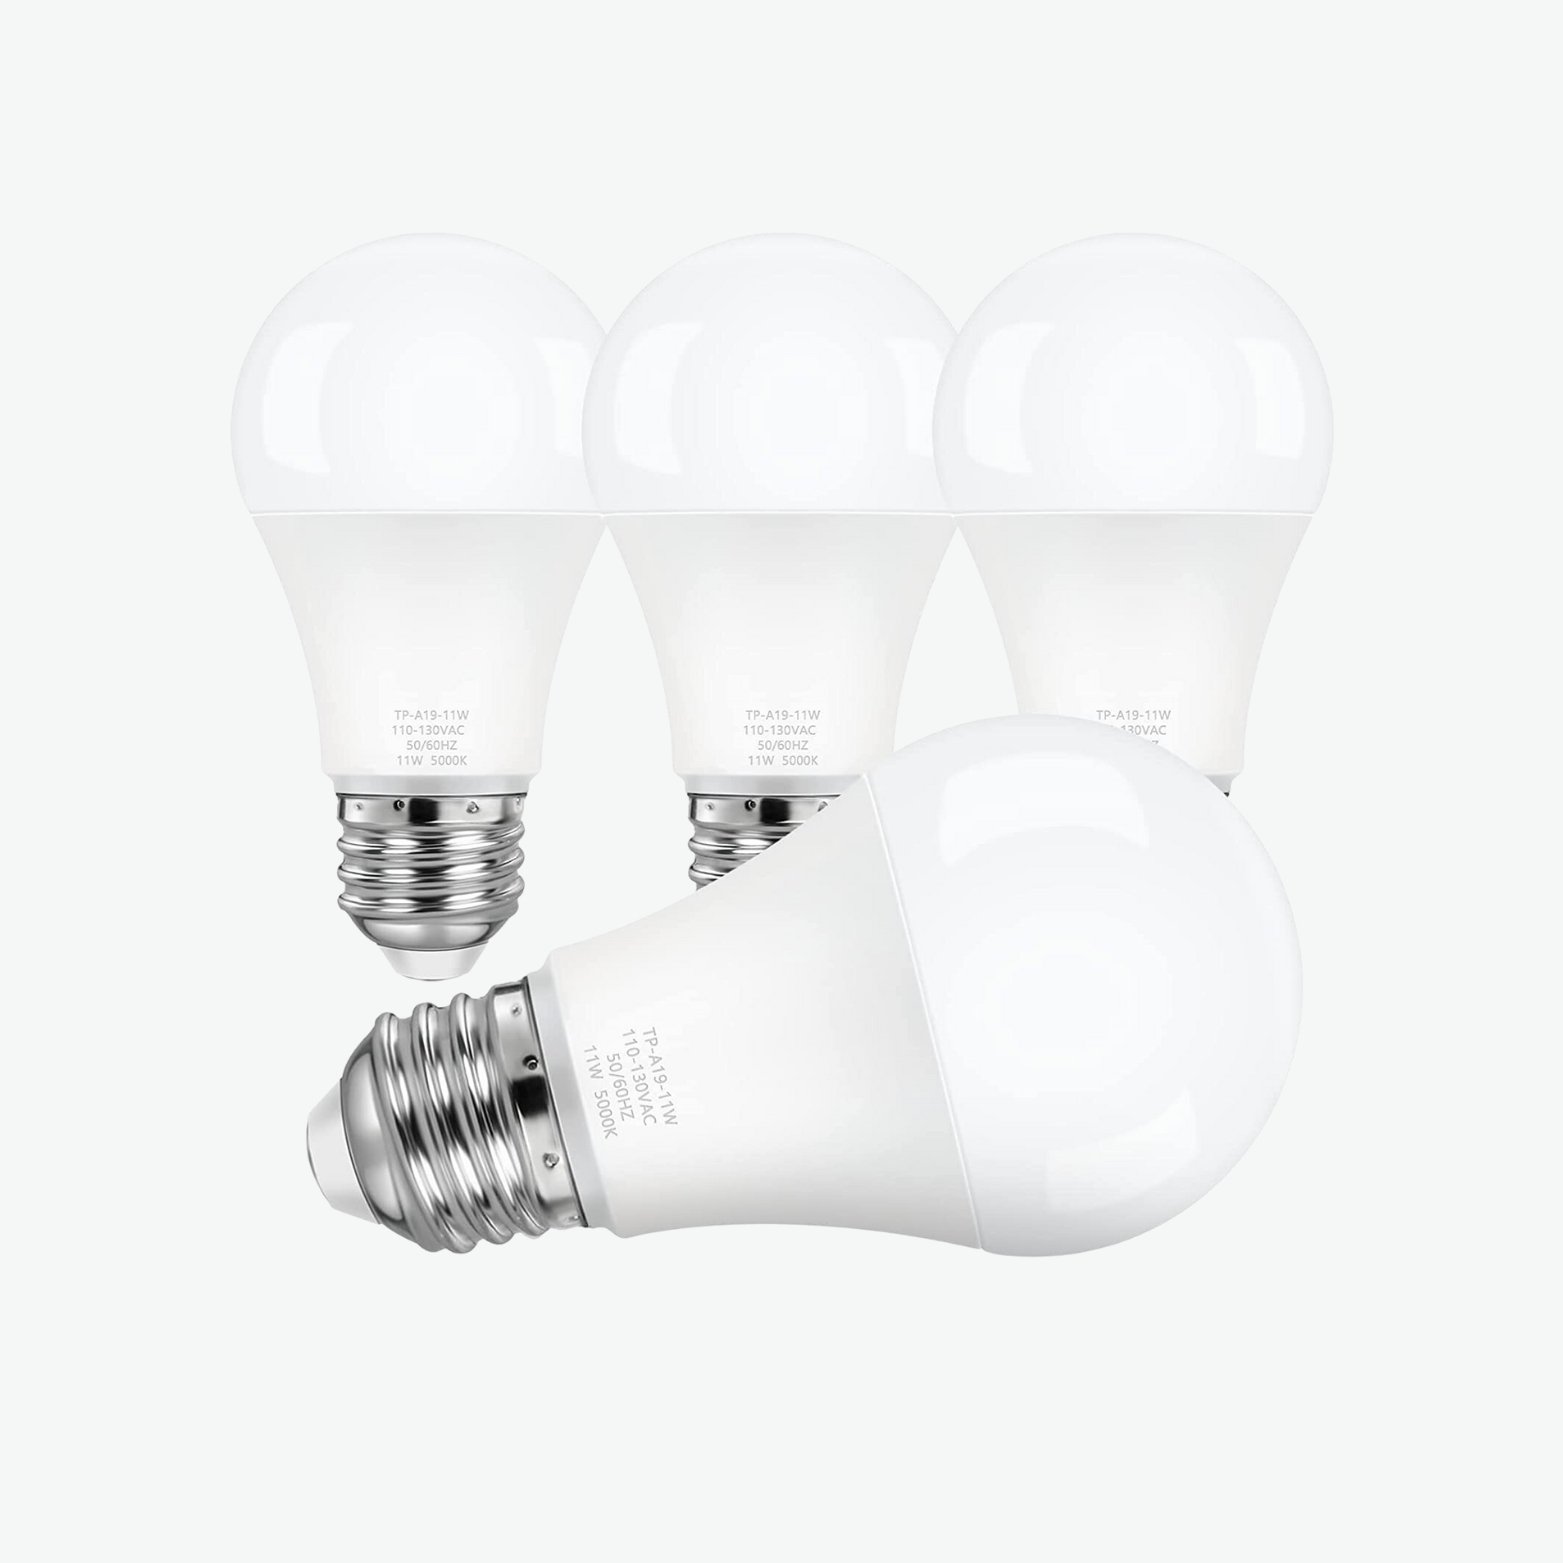 LED Light Bulbs copy.jpg